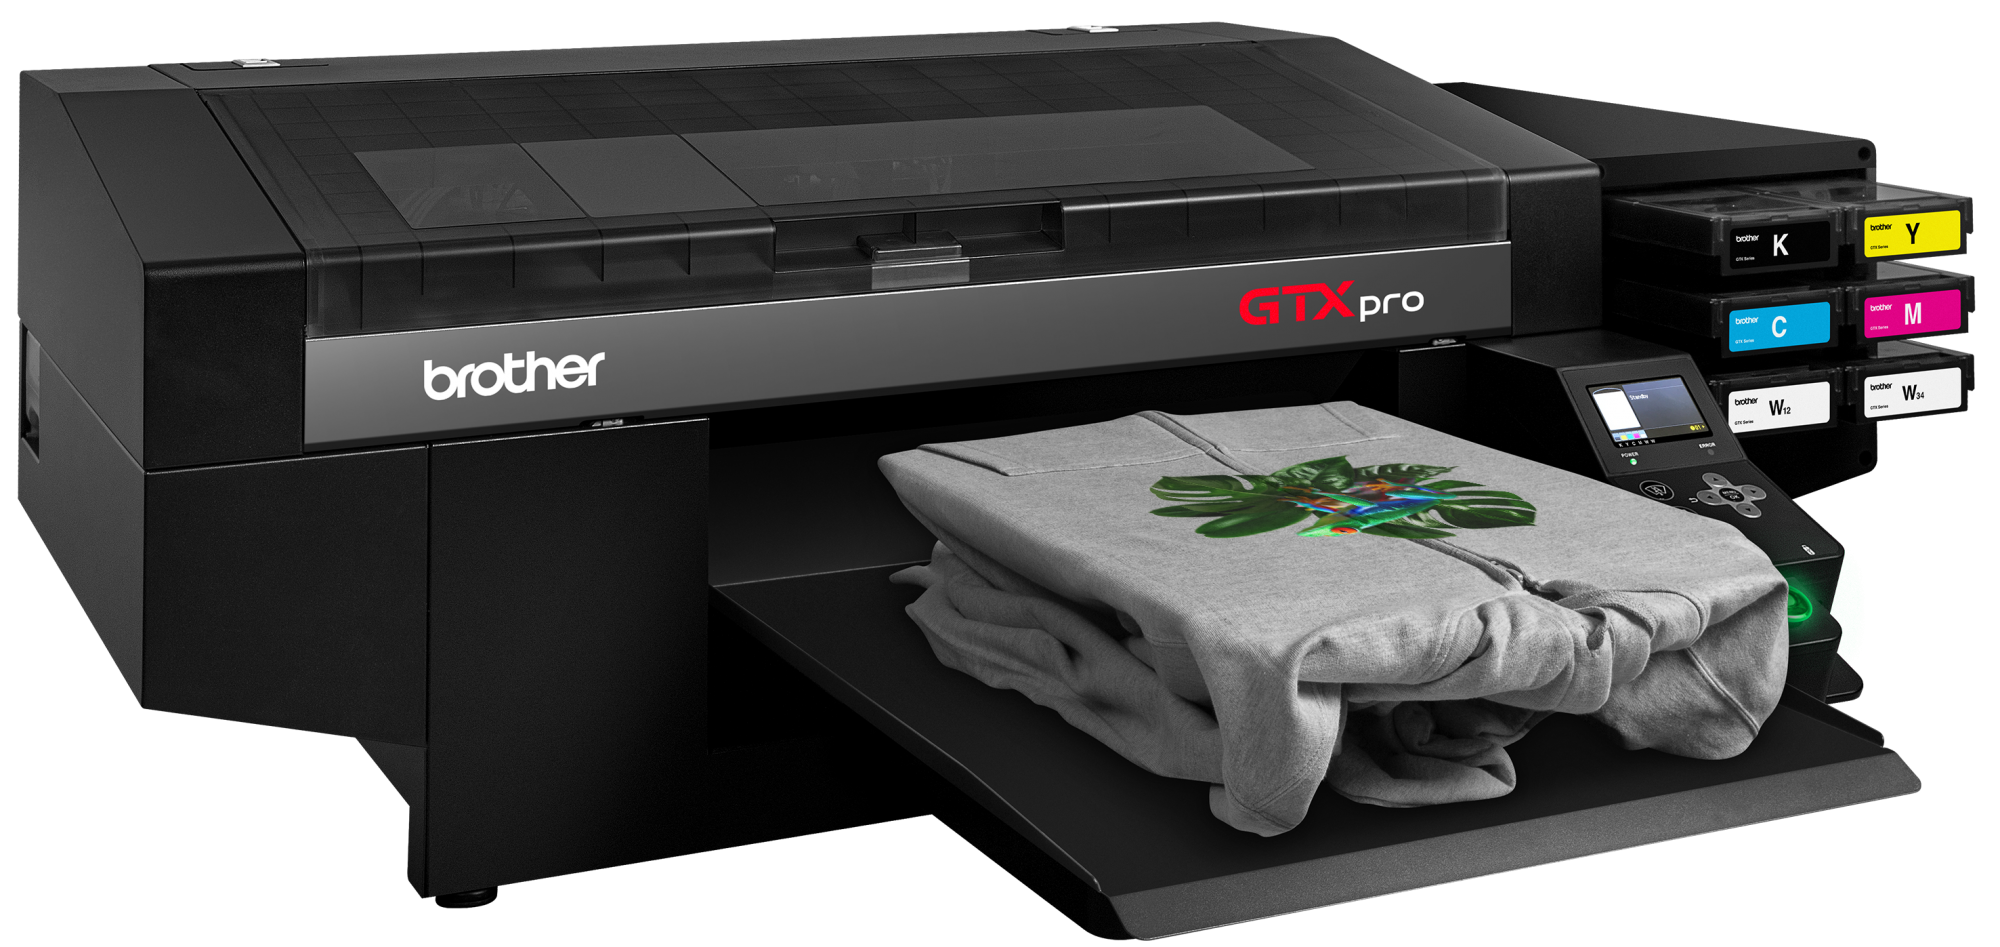 Принтер для стен купить. Текстильный принтер Бразер GTX. Brother GTX 423. Brother GTX Pro. Текстильный принтер DTG Pro.